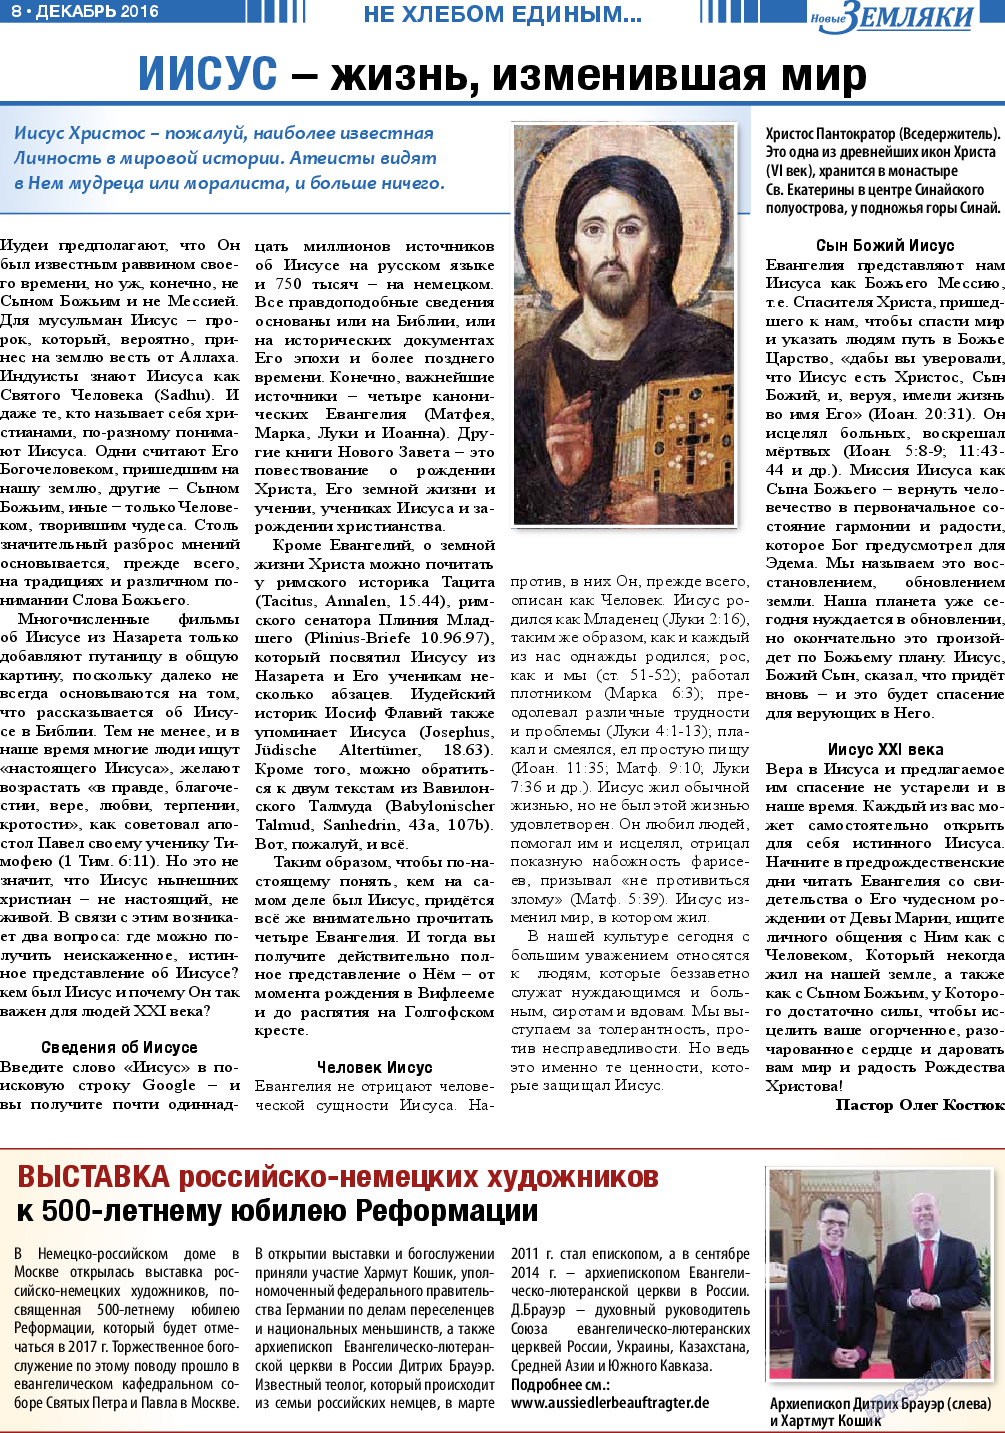 Новые Земляки, газета. 2016 №12 стр.8